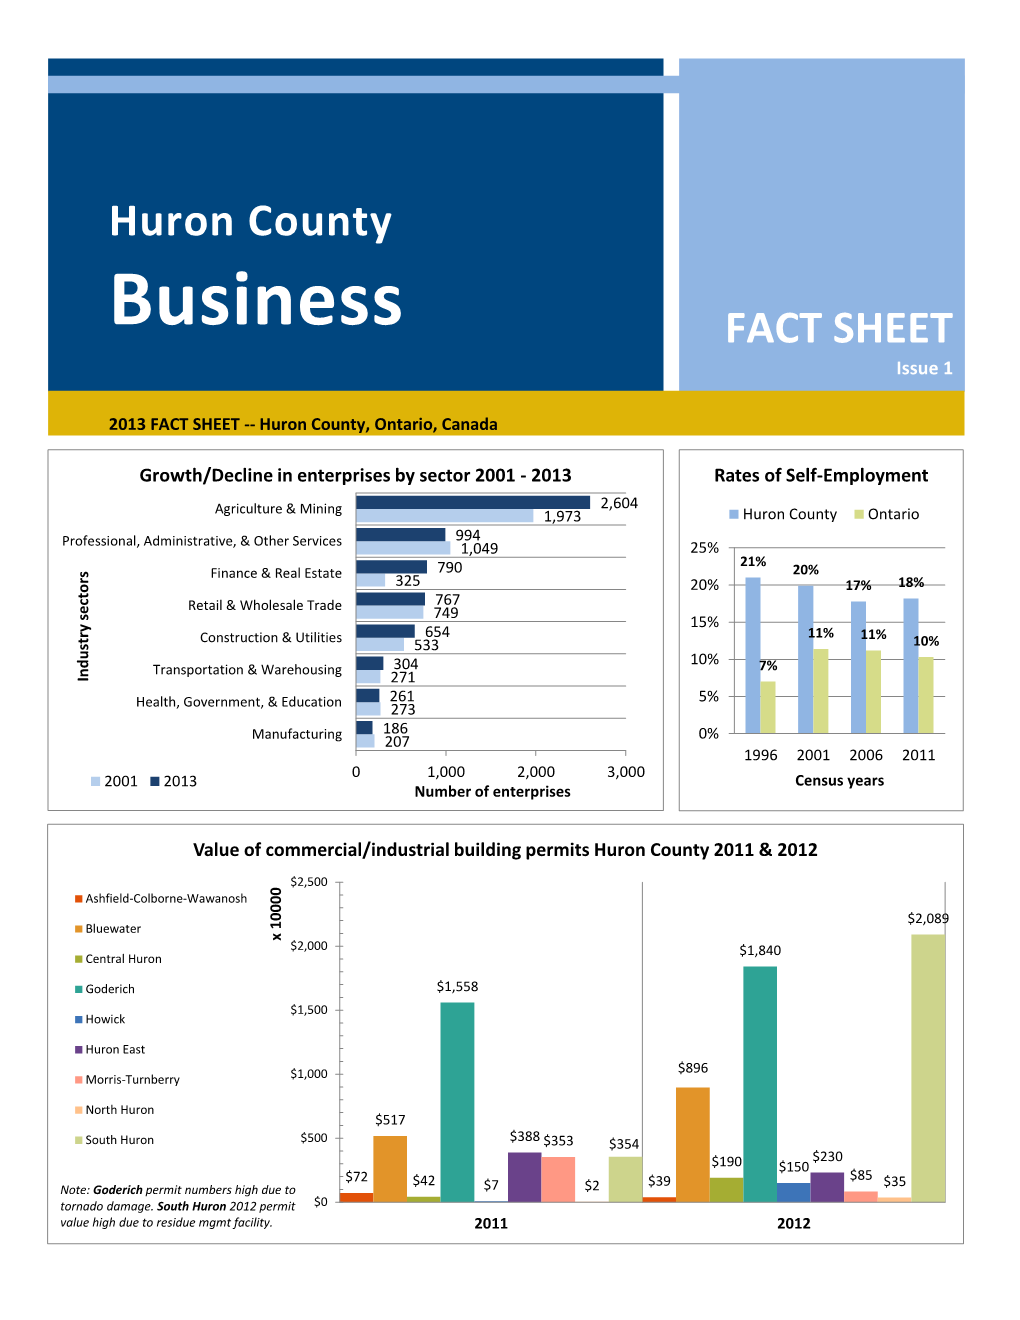 Huron County Business Fact Sheet